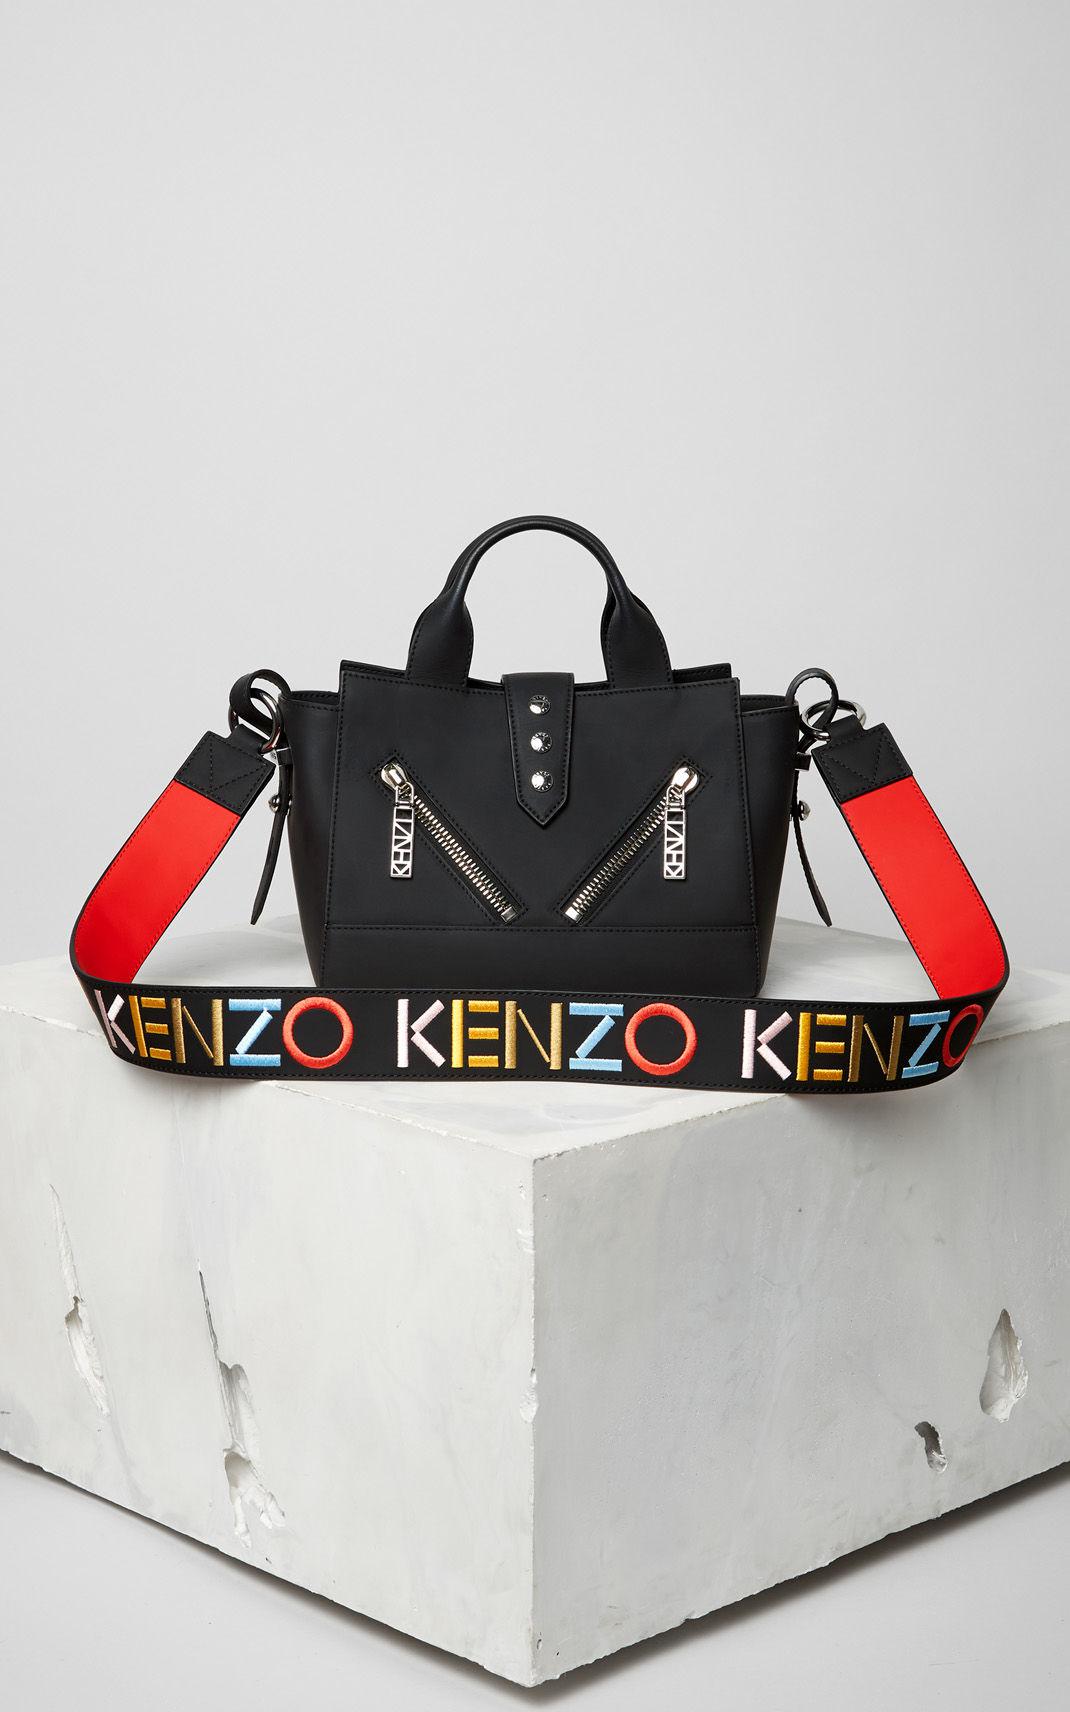 kenzo strap bag